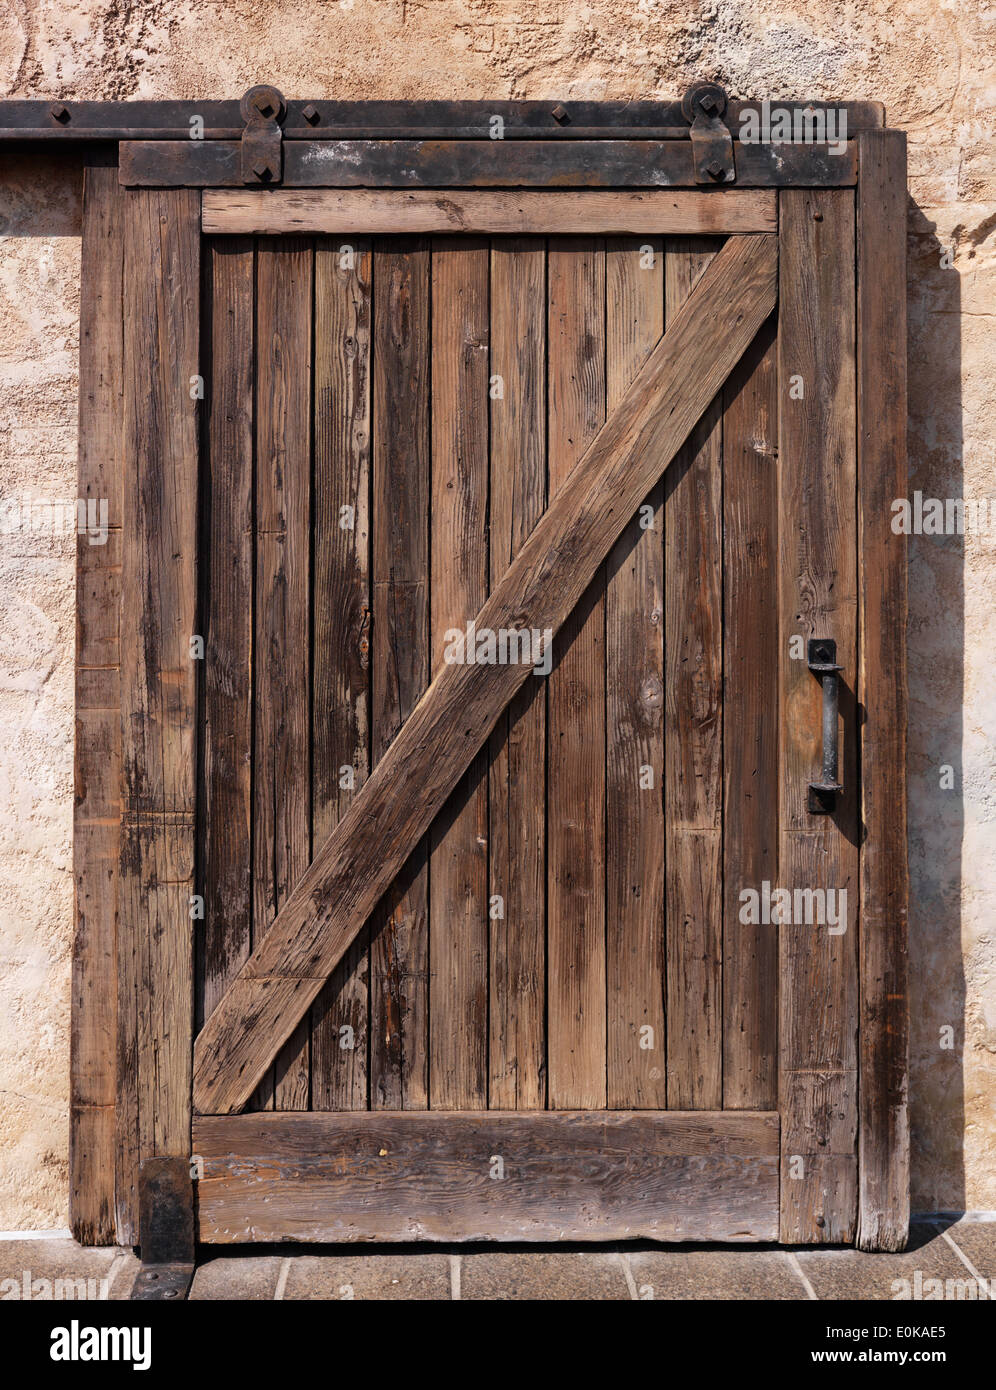 Old sliding wooden door rustic texture Stock Photo